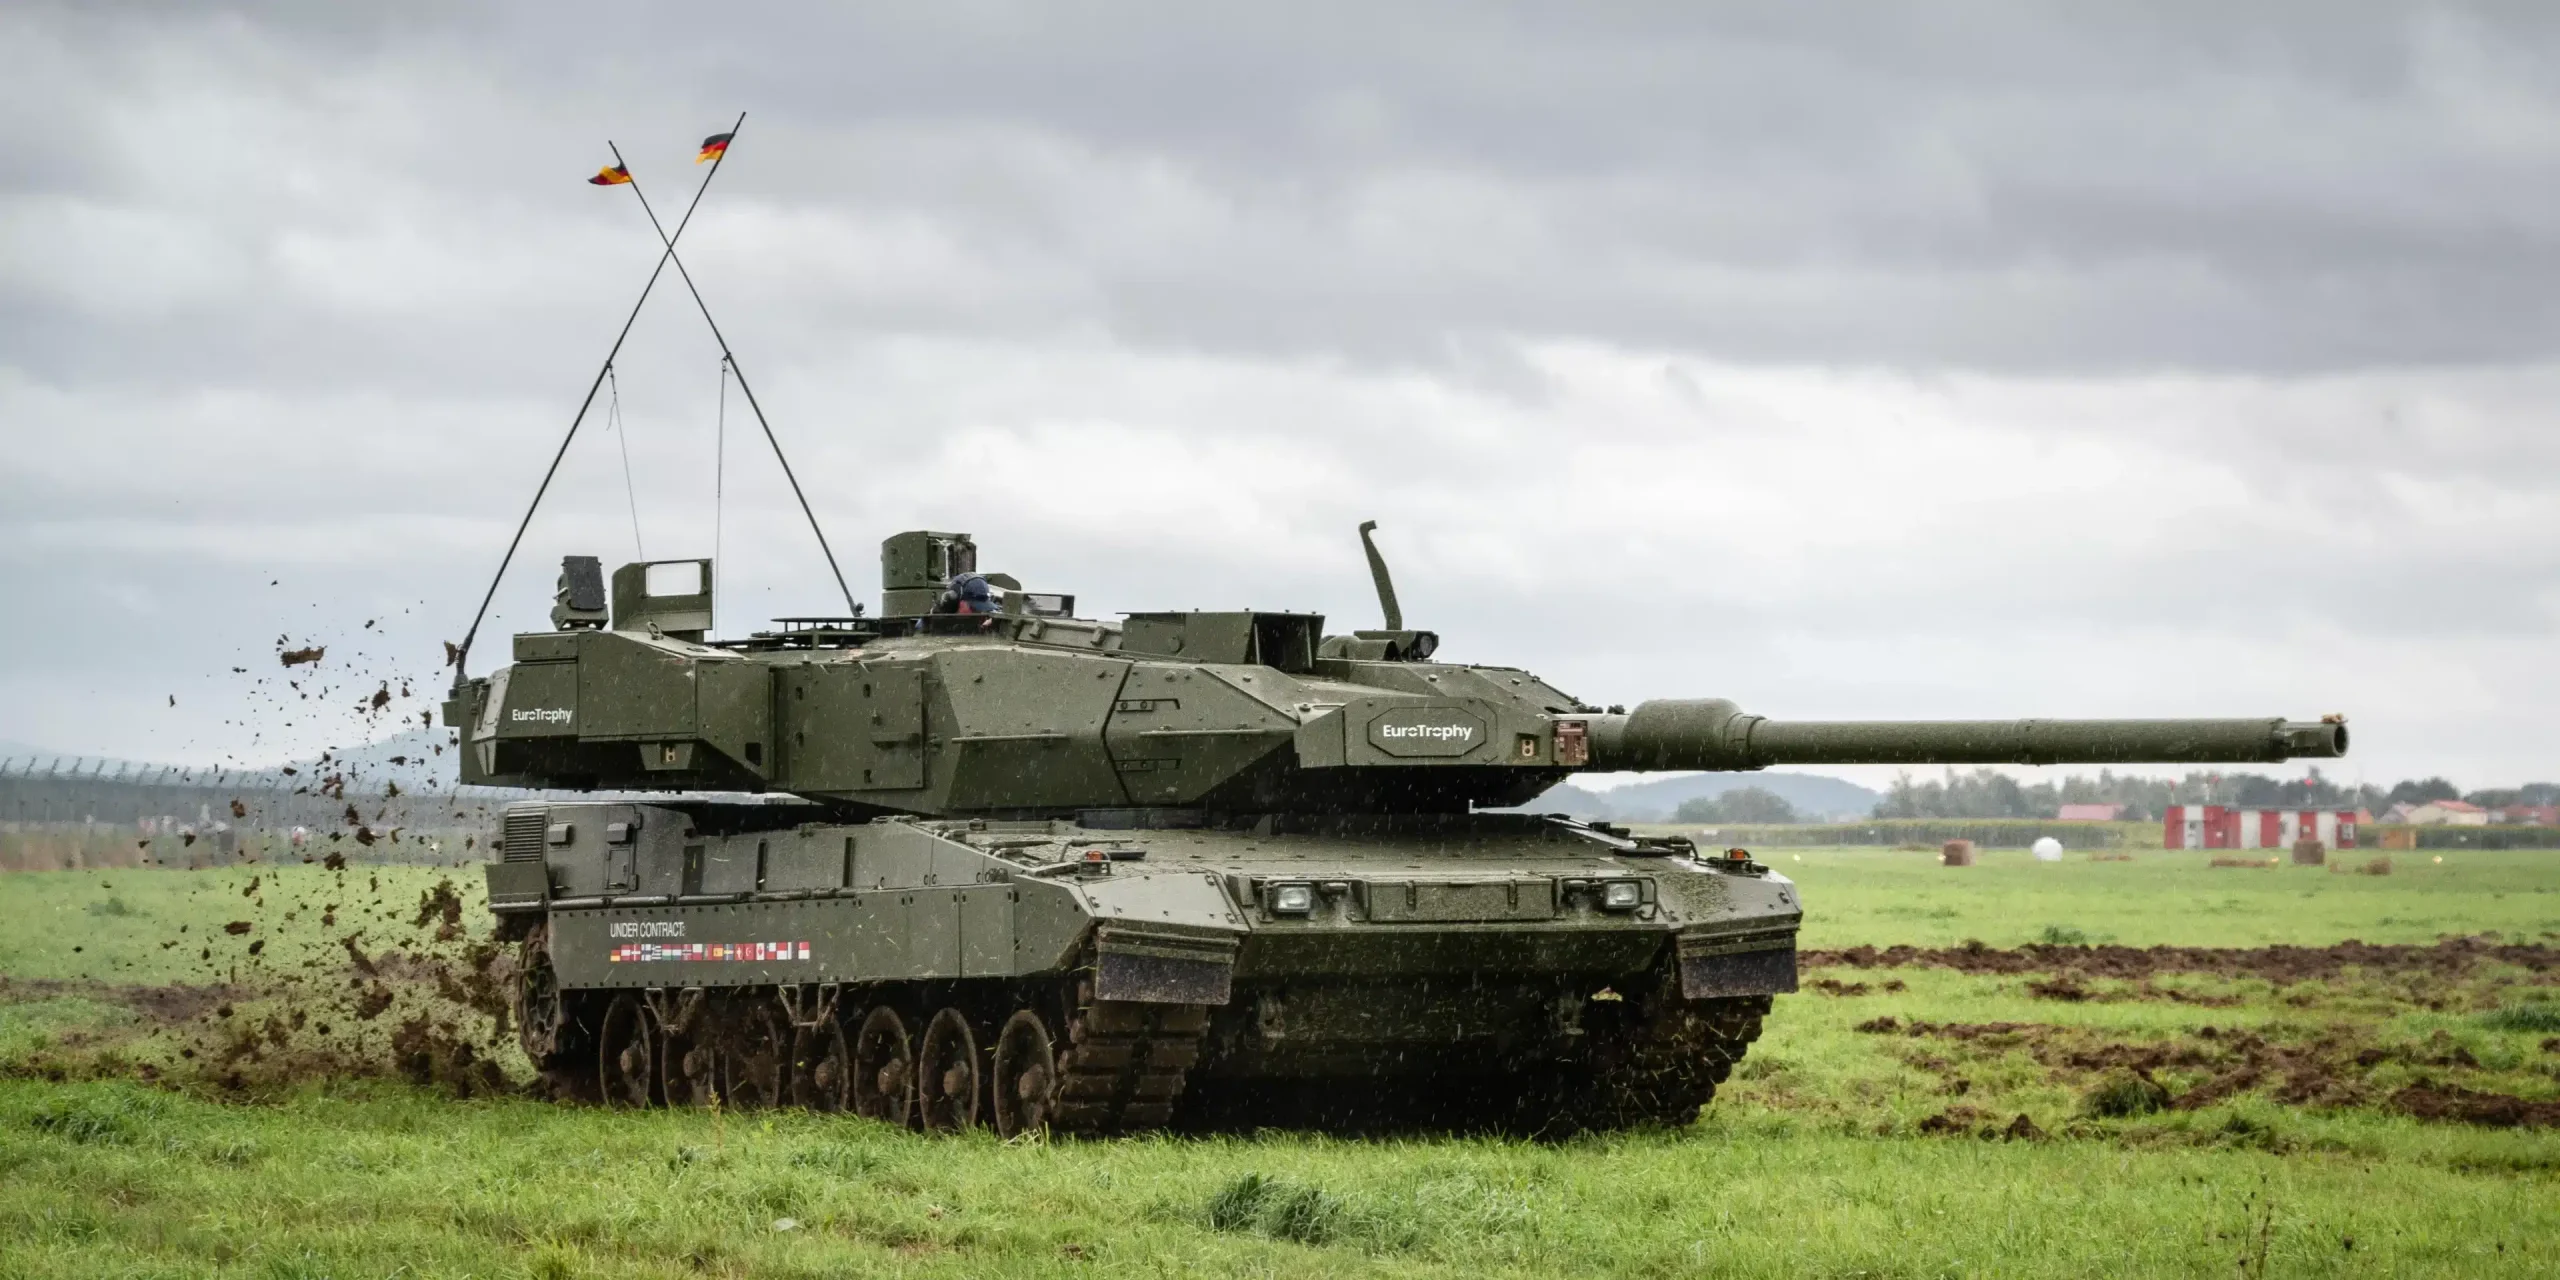 Il Leopard 2 A8 era il veicolo selezionato dall'Italia per affiancare i vecchi Ariete, ma il contratto è saltato.